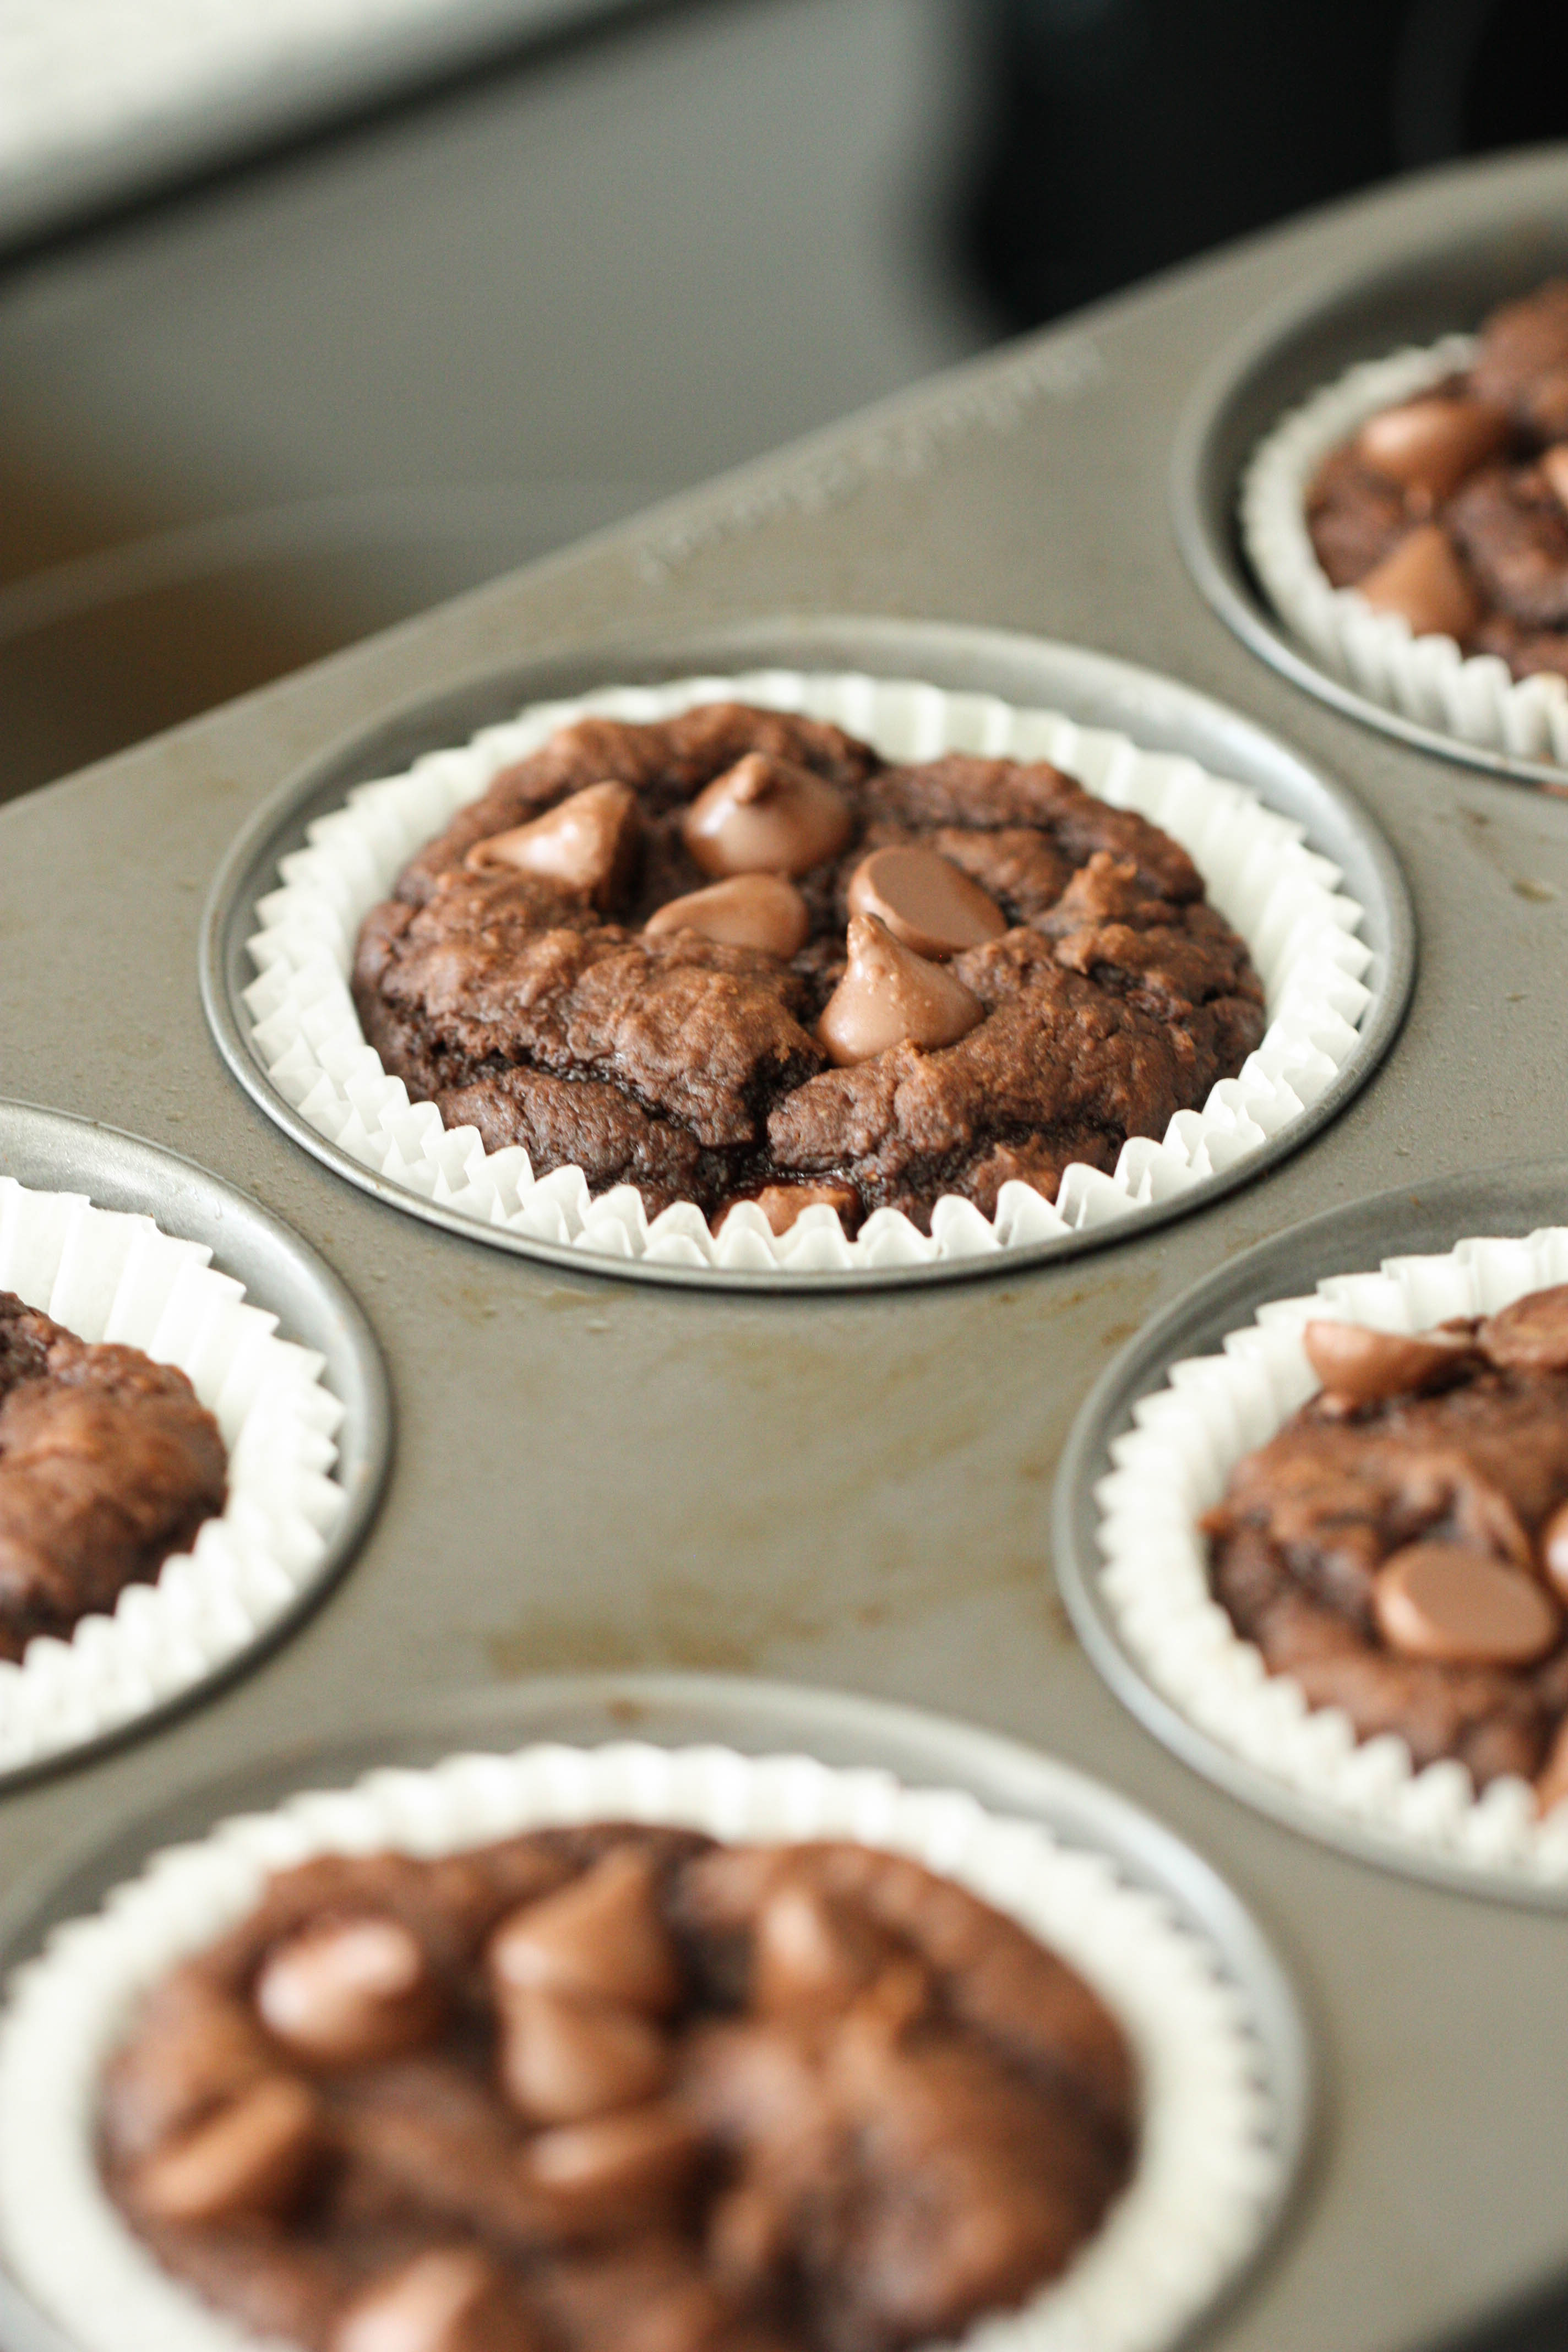 Chocolate Pumpkin Muffins in muffin pan

